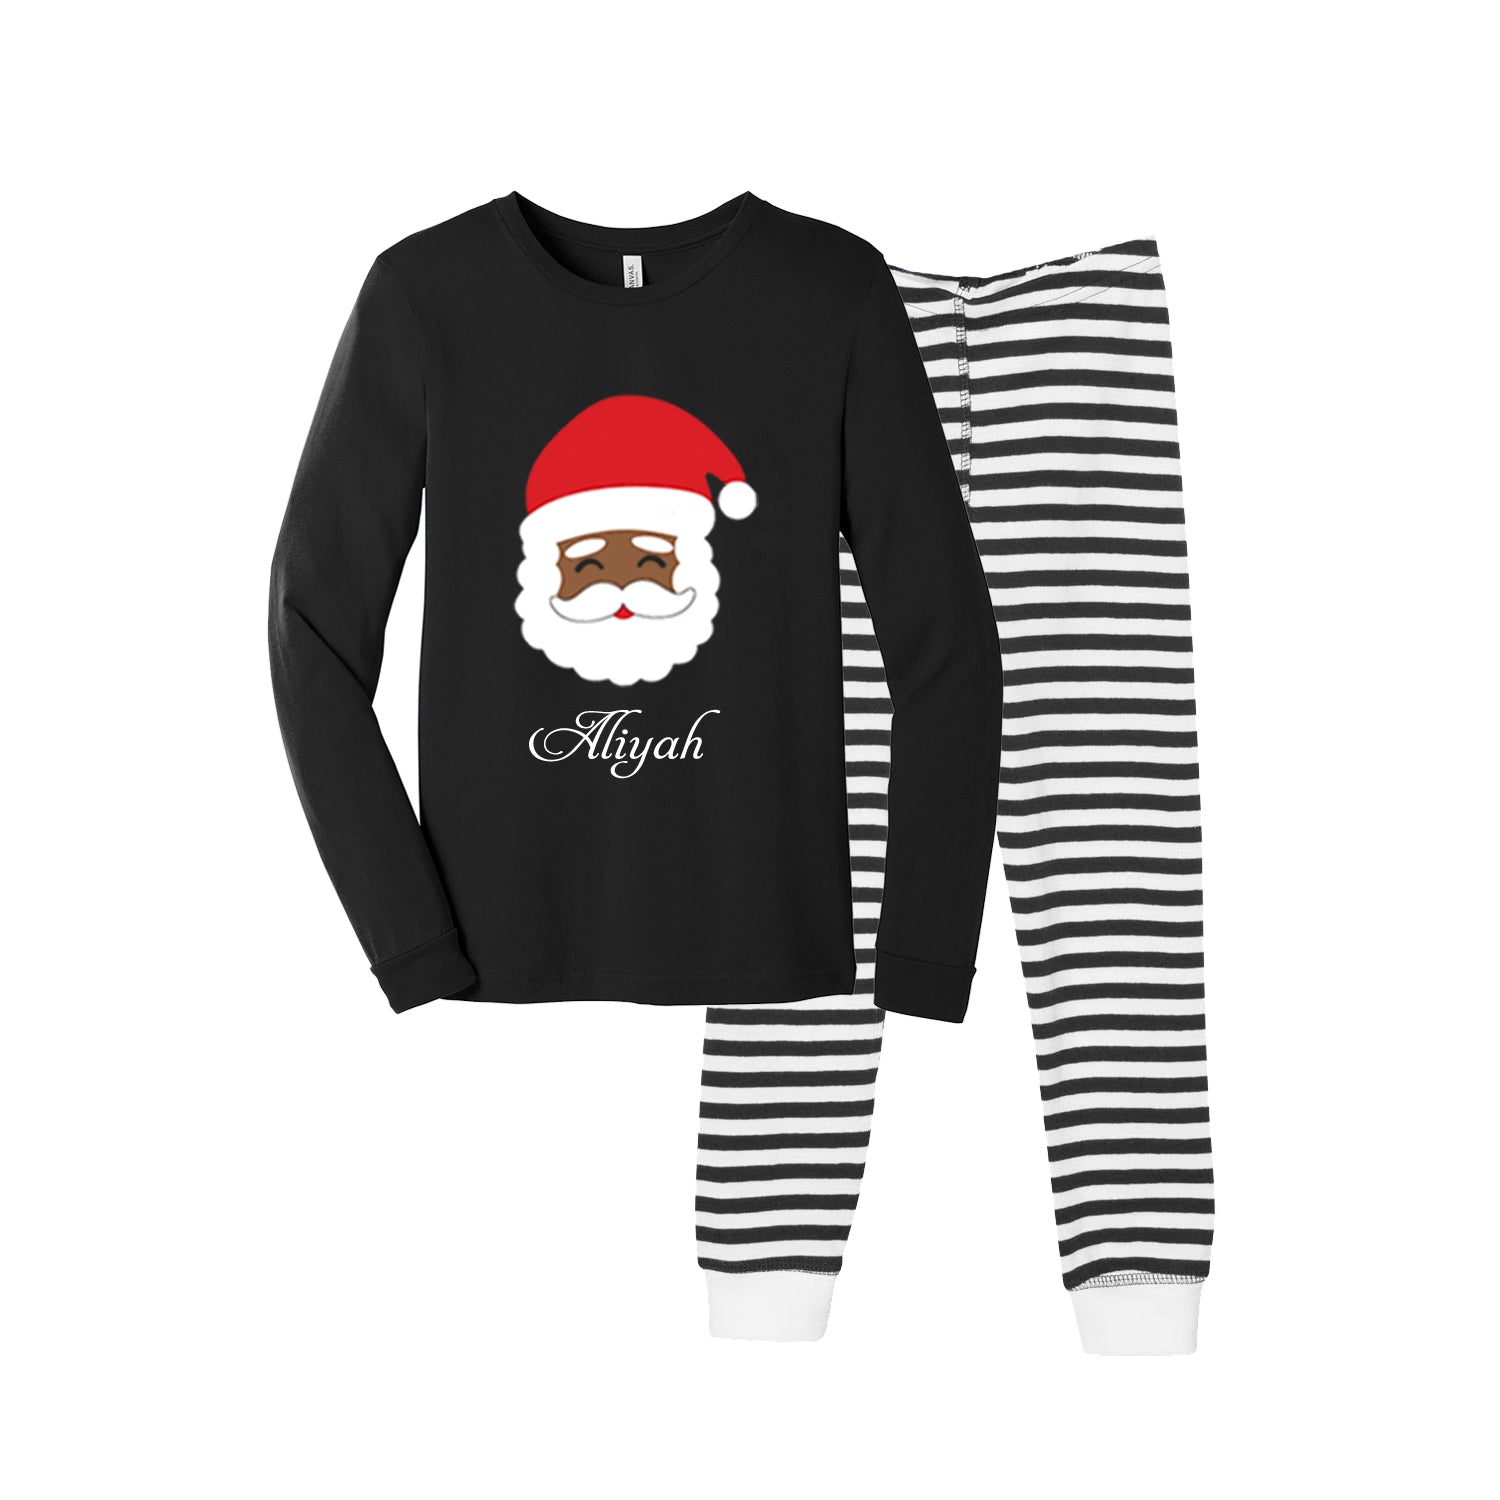 Unisex Matching Santa Claus Pajama Set for Toddler & Baby